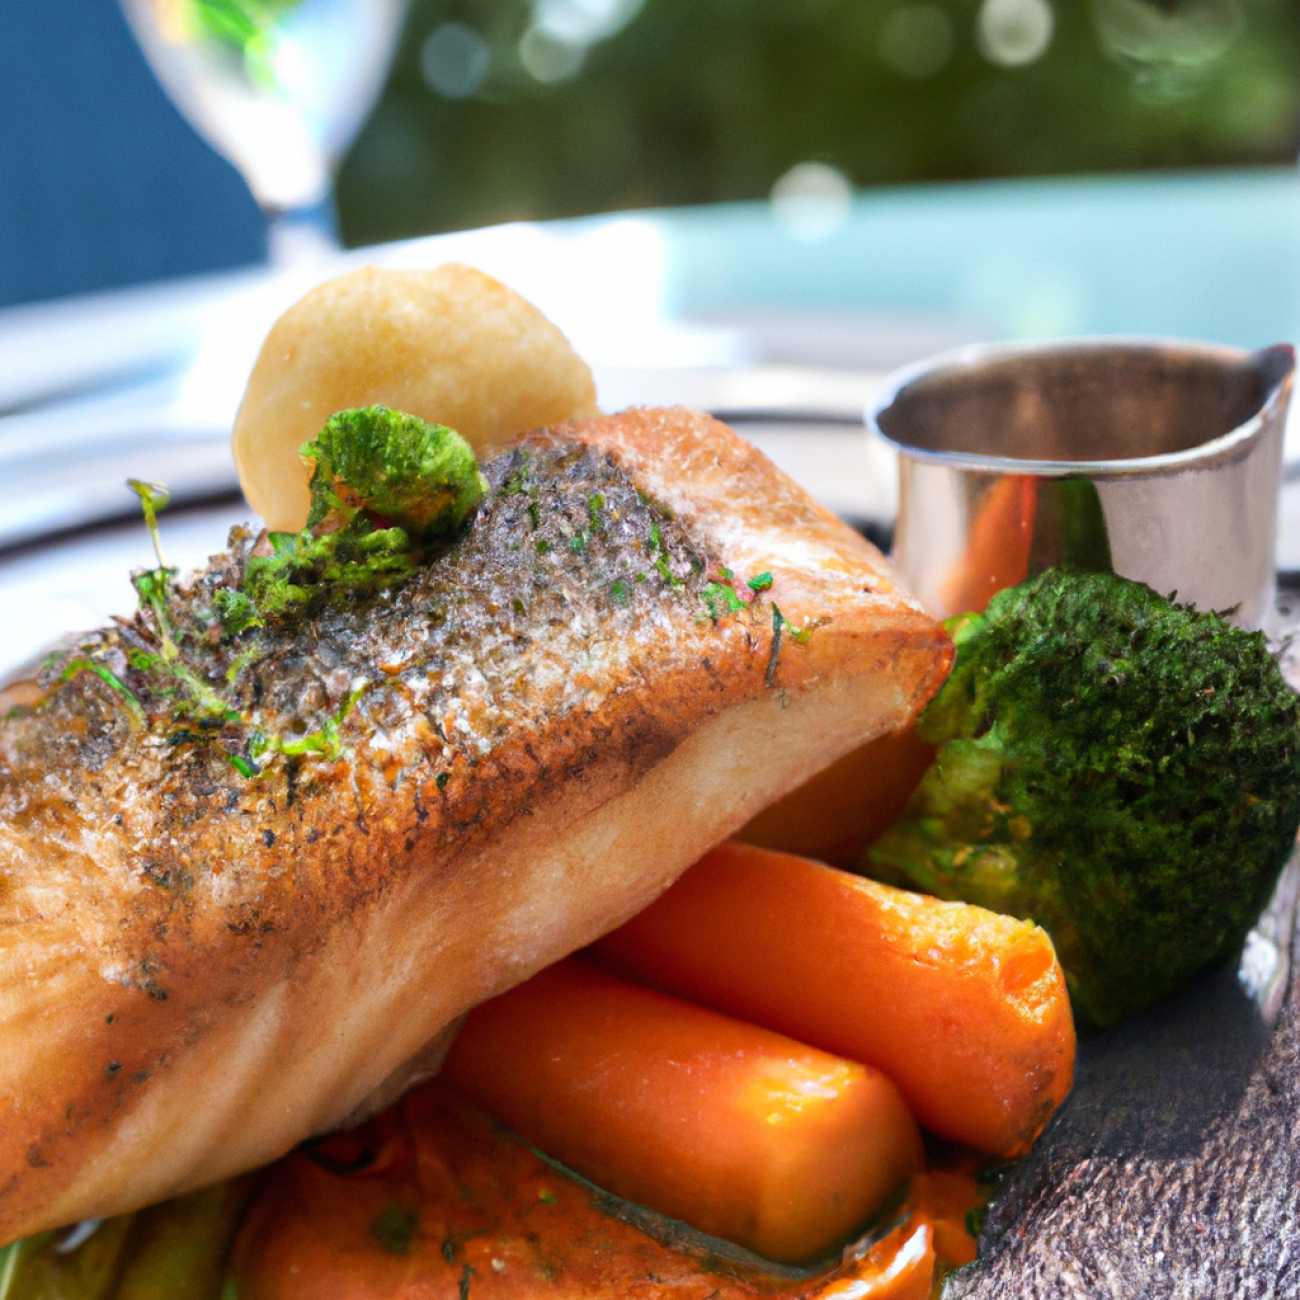 8. Restaurace Bellevue - Výhled, luxus a prvotřídní rybí speciality